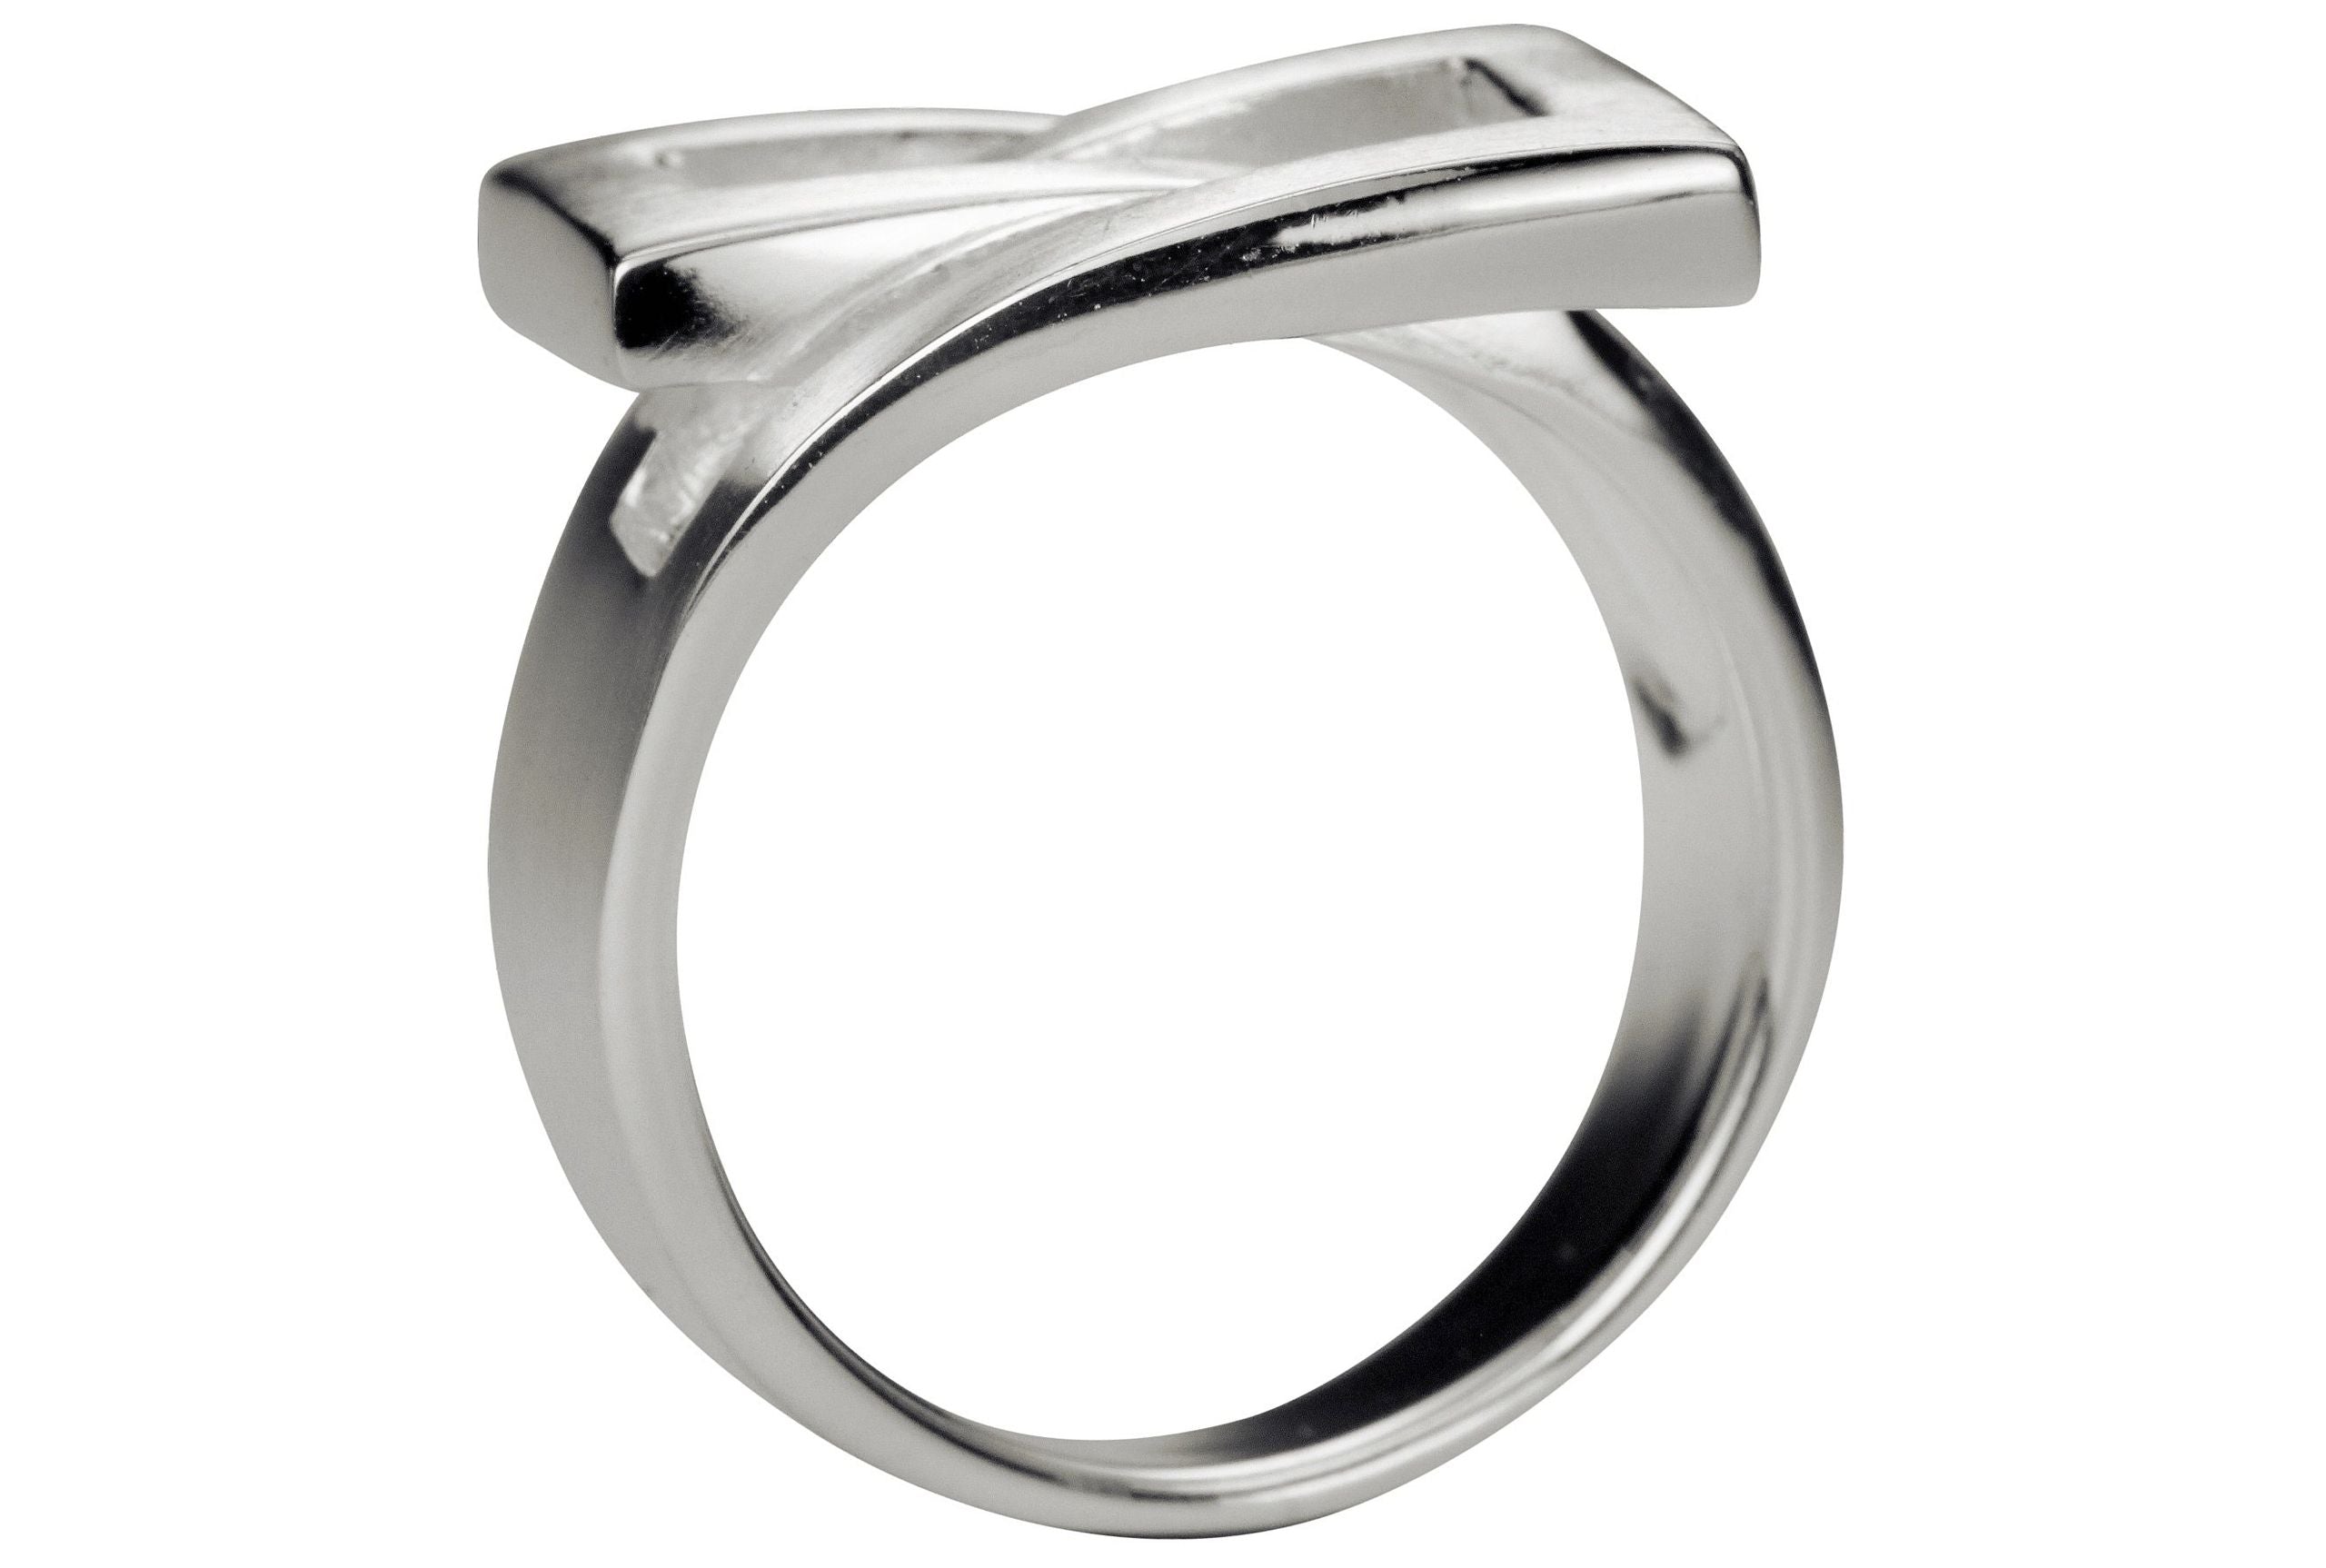 Ein Damenring aus Silber in großen Größen, bestehend aus einer massiven Ringschiene und zwei ineinander umschlungenen Vierecken.